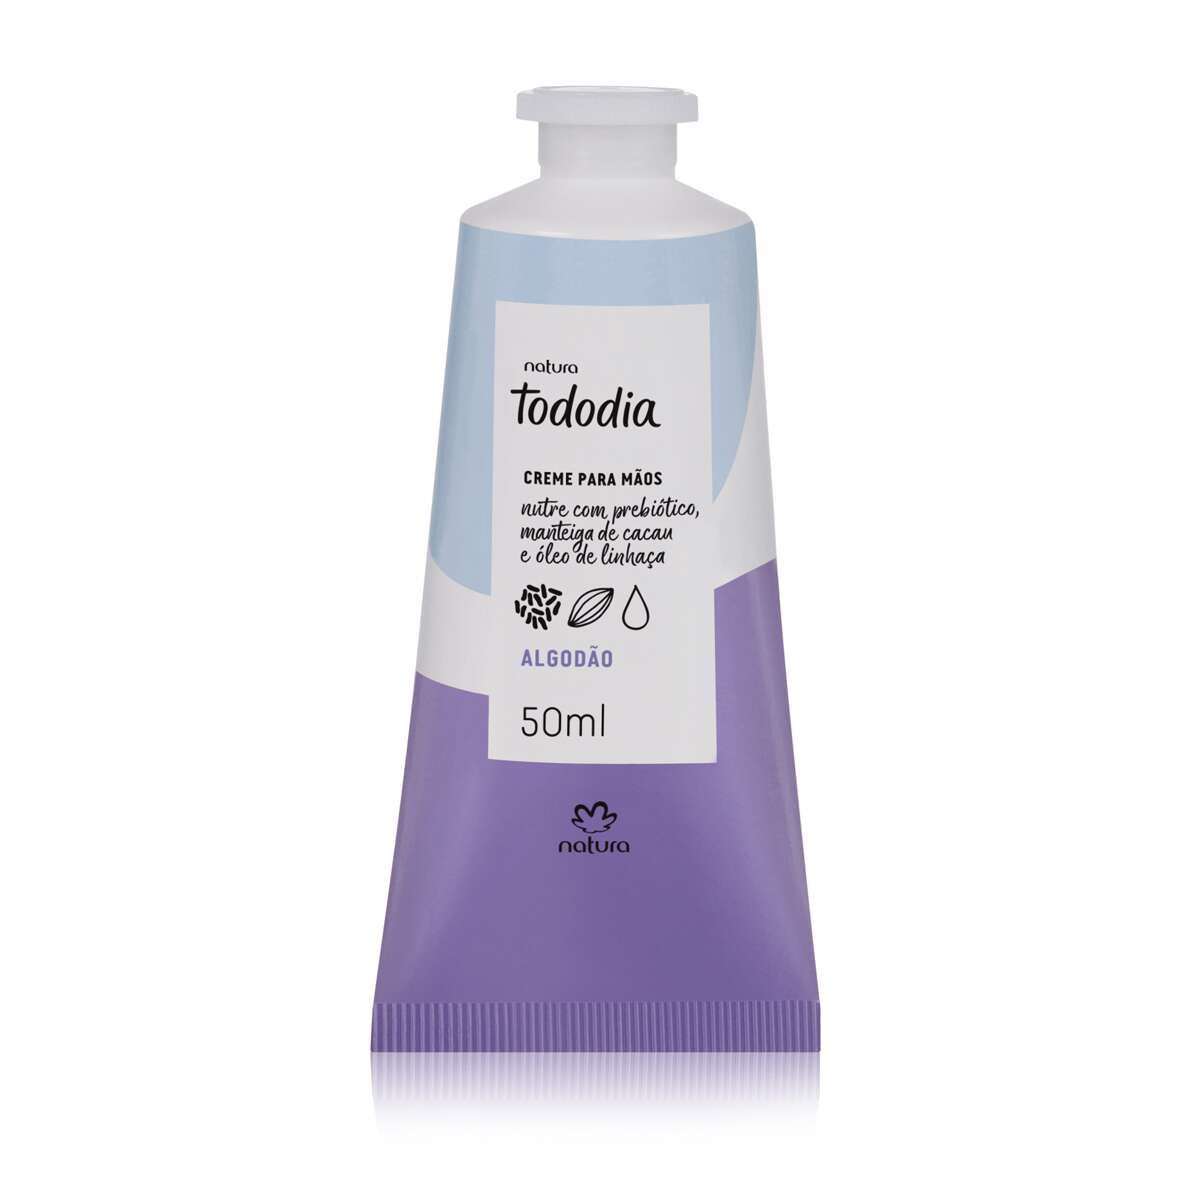 Tododia Cotton Nourishing Hand Cream 50ml